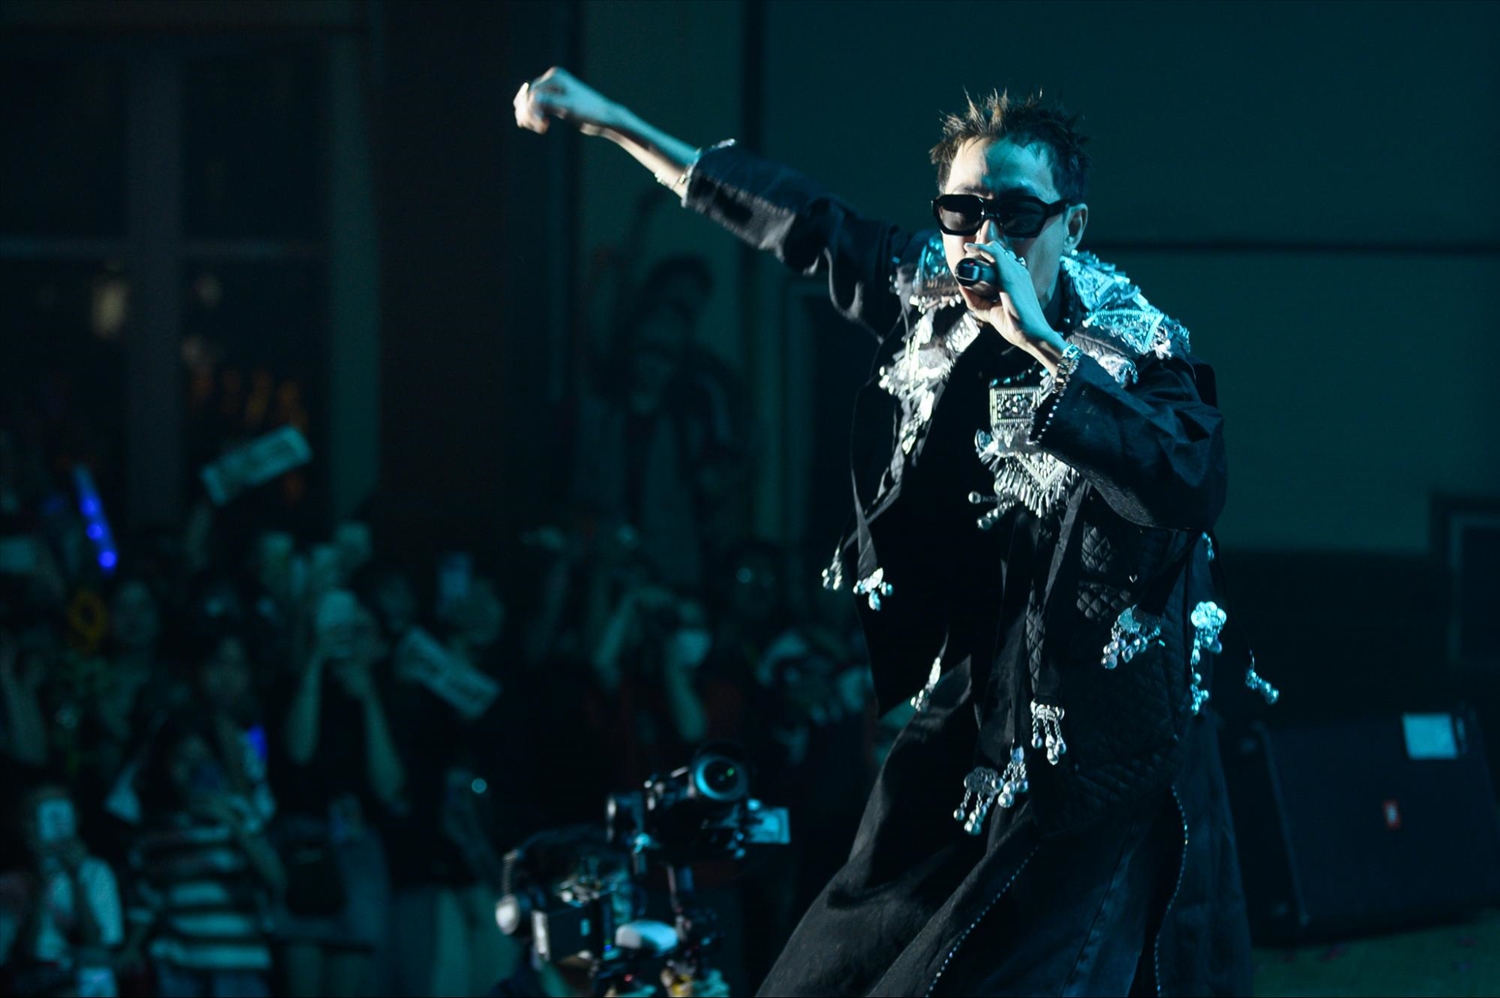 Nam rapper gốc Tuyên Quang đã “náo loạn” Hội trường C với những bản hit nổi tiếng nhất của mình: “À Lôi”, “Theo anh về bản”, “Inh lả ơi”.